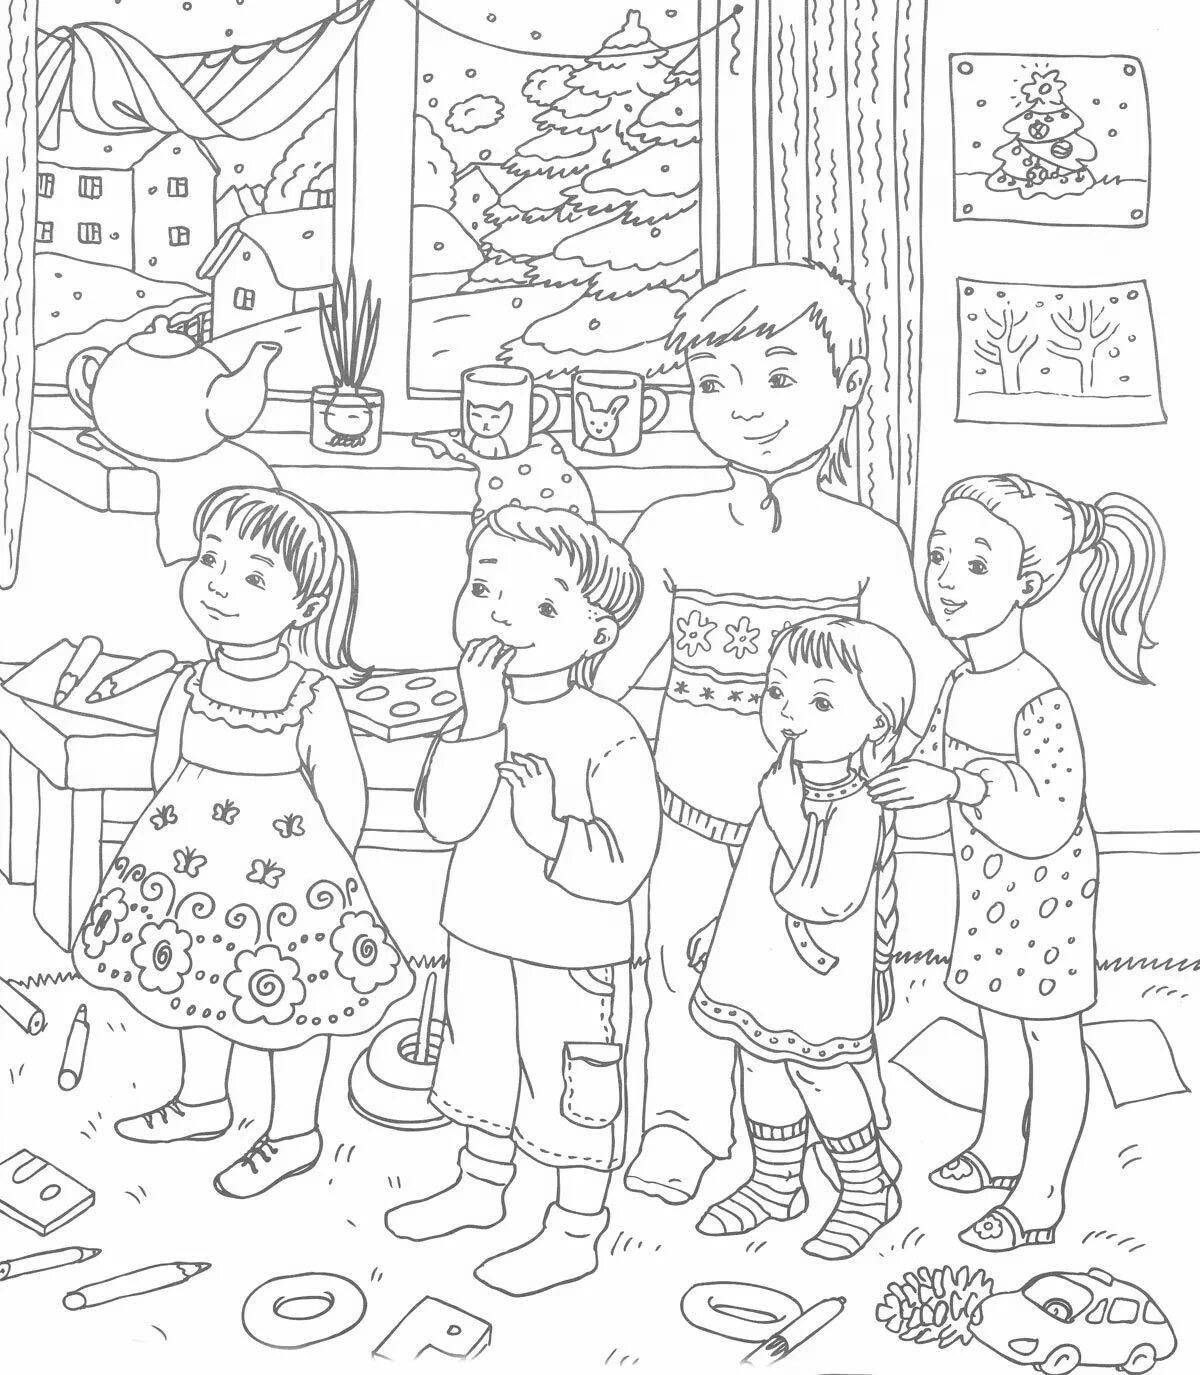 Adorable Christmas carol coloring book